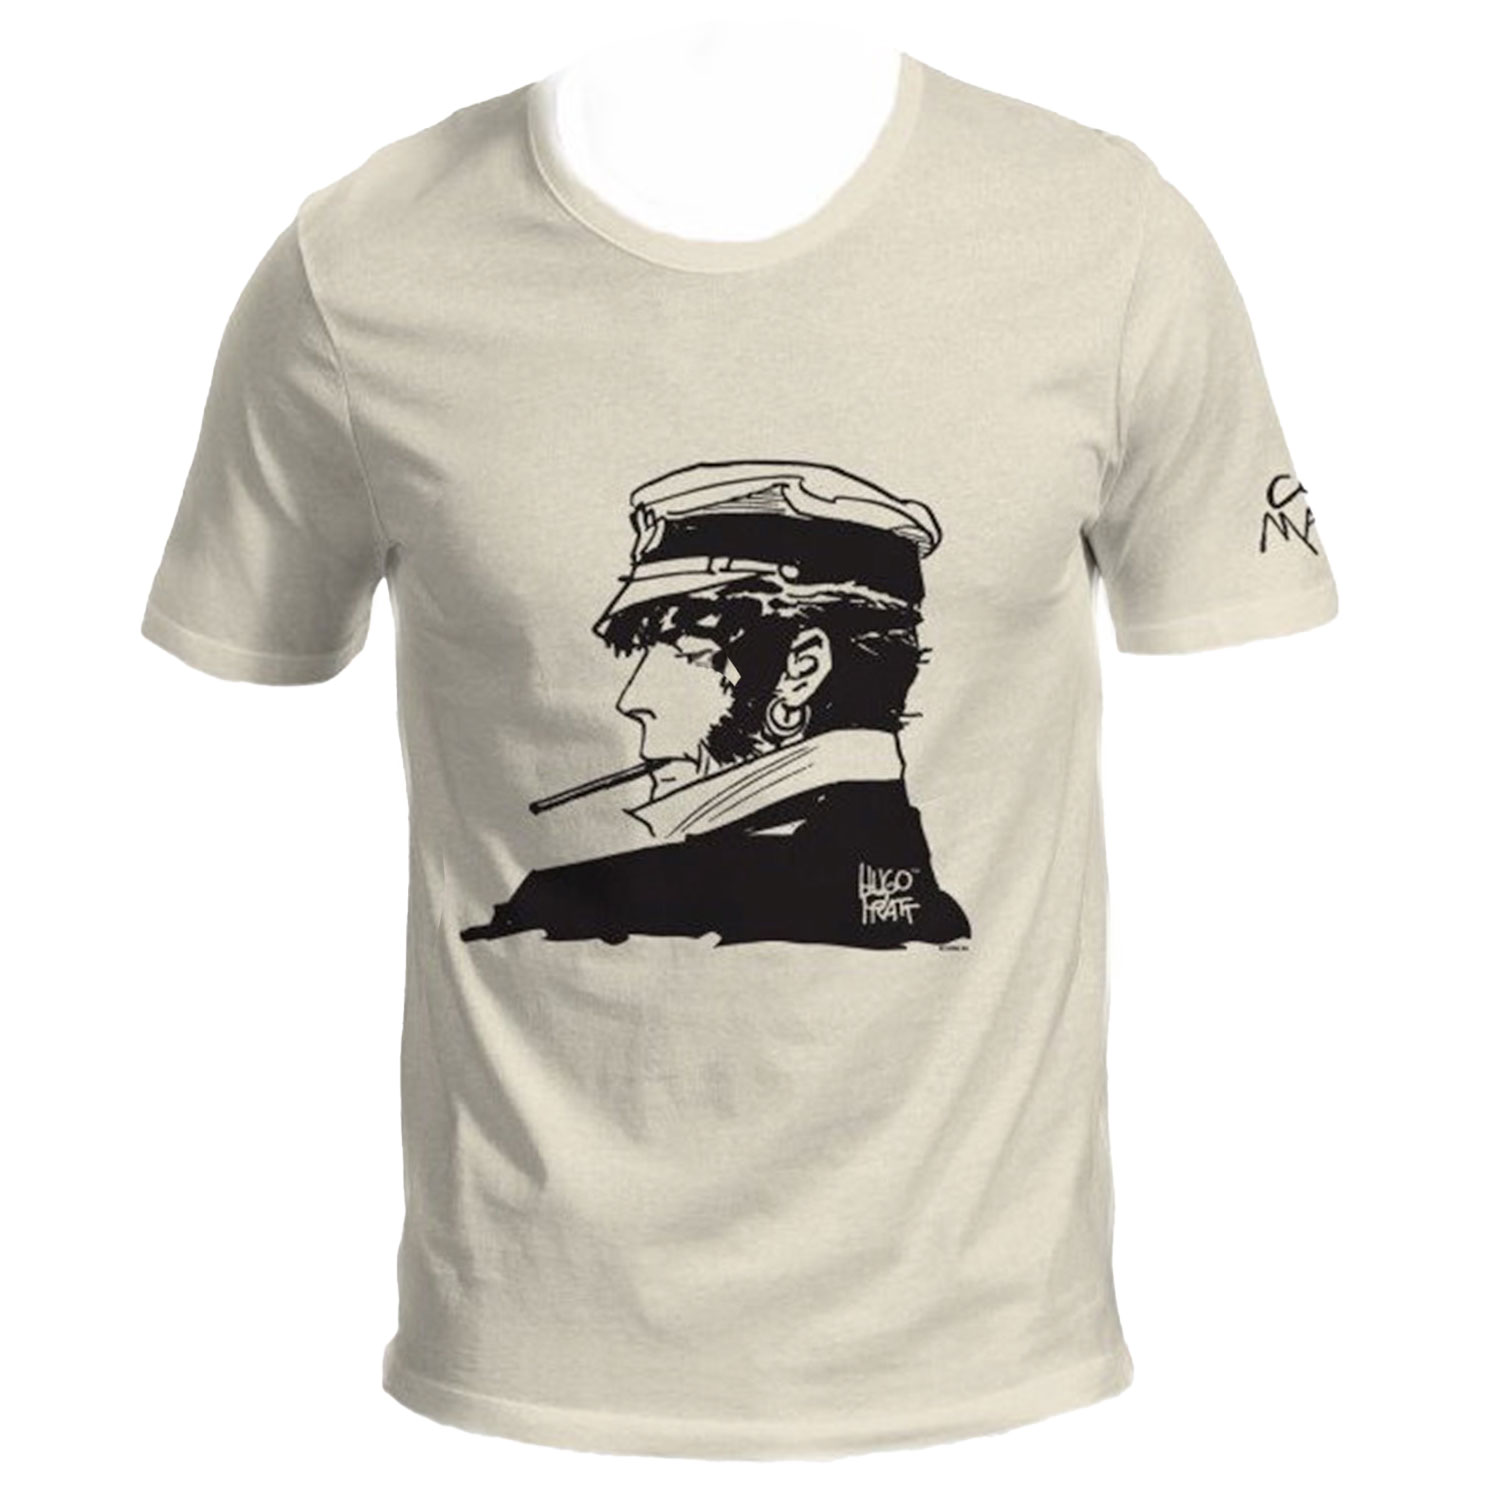 Hugo Pratt T-shirt : Corto Maltese , Cigarette - Ecru - Size S